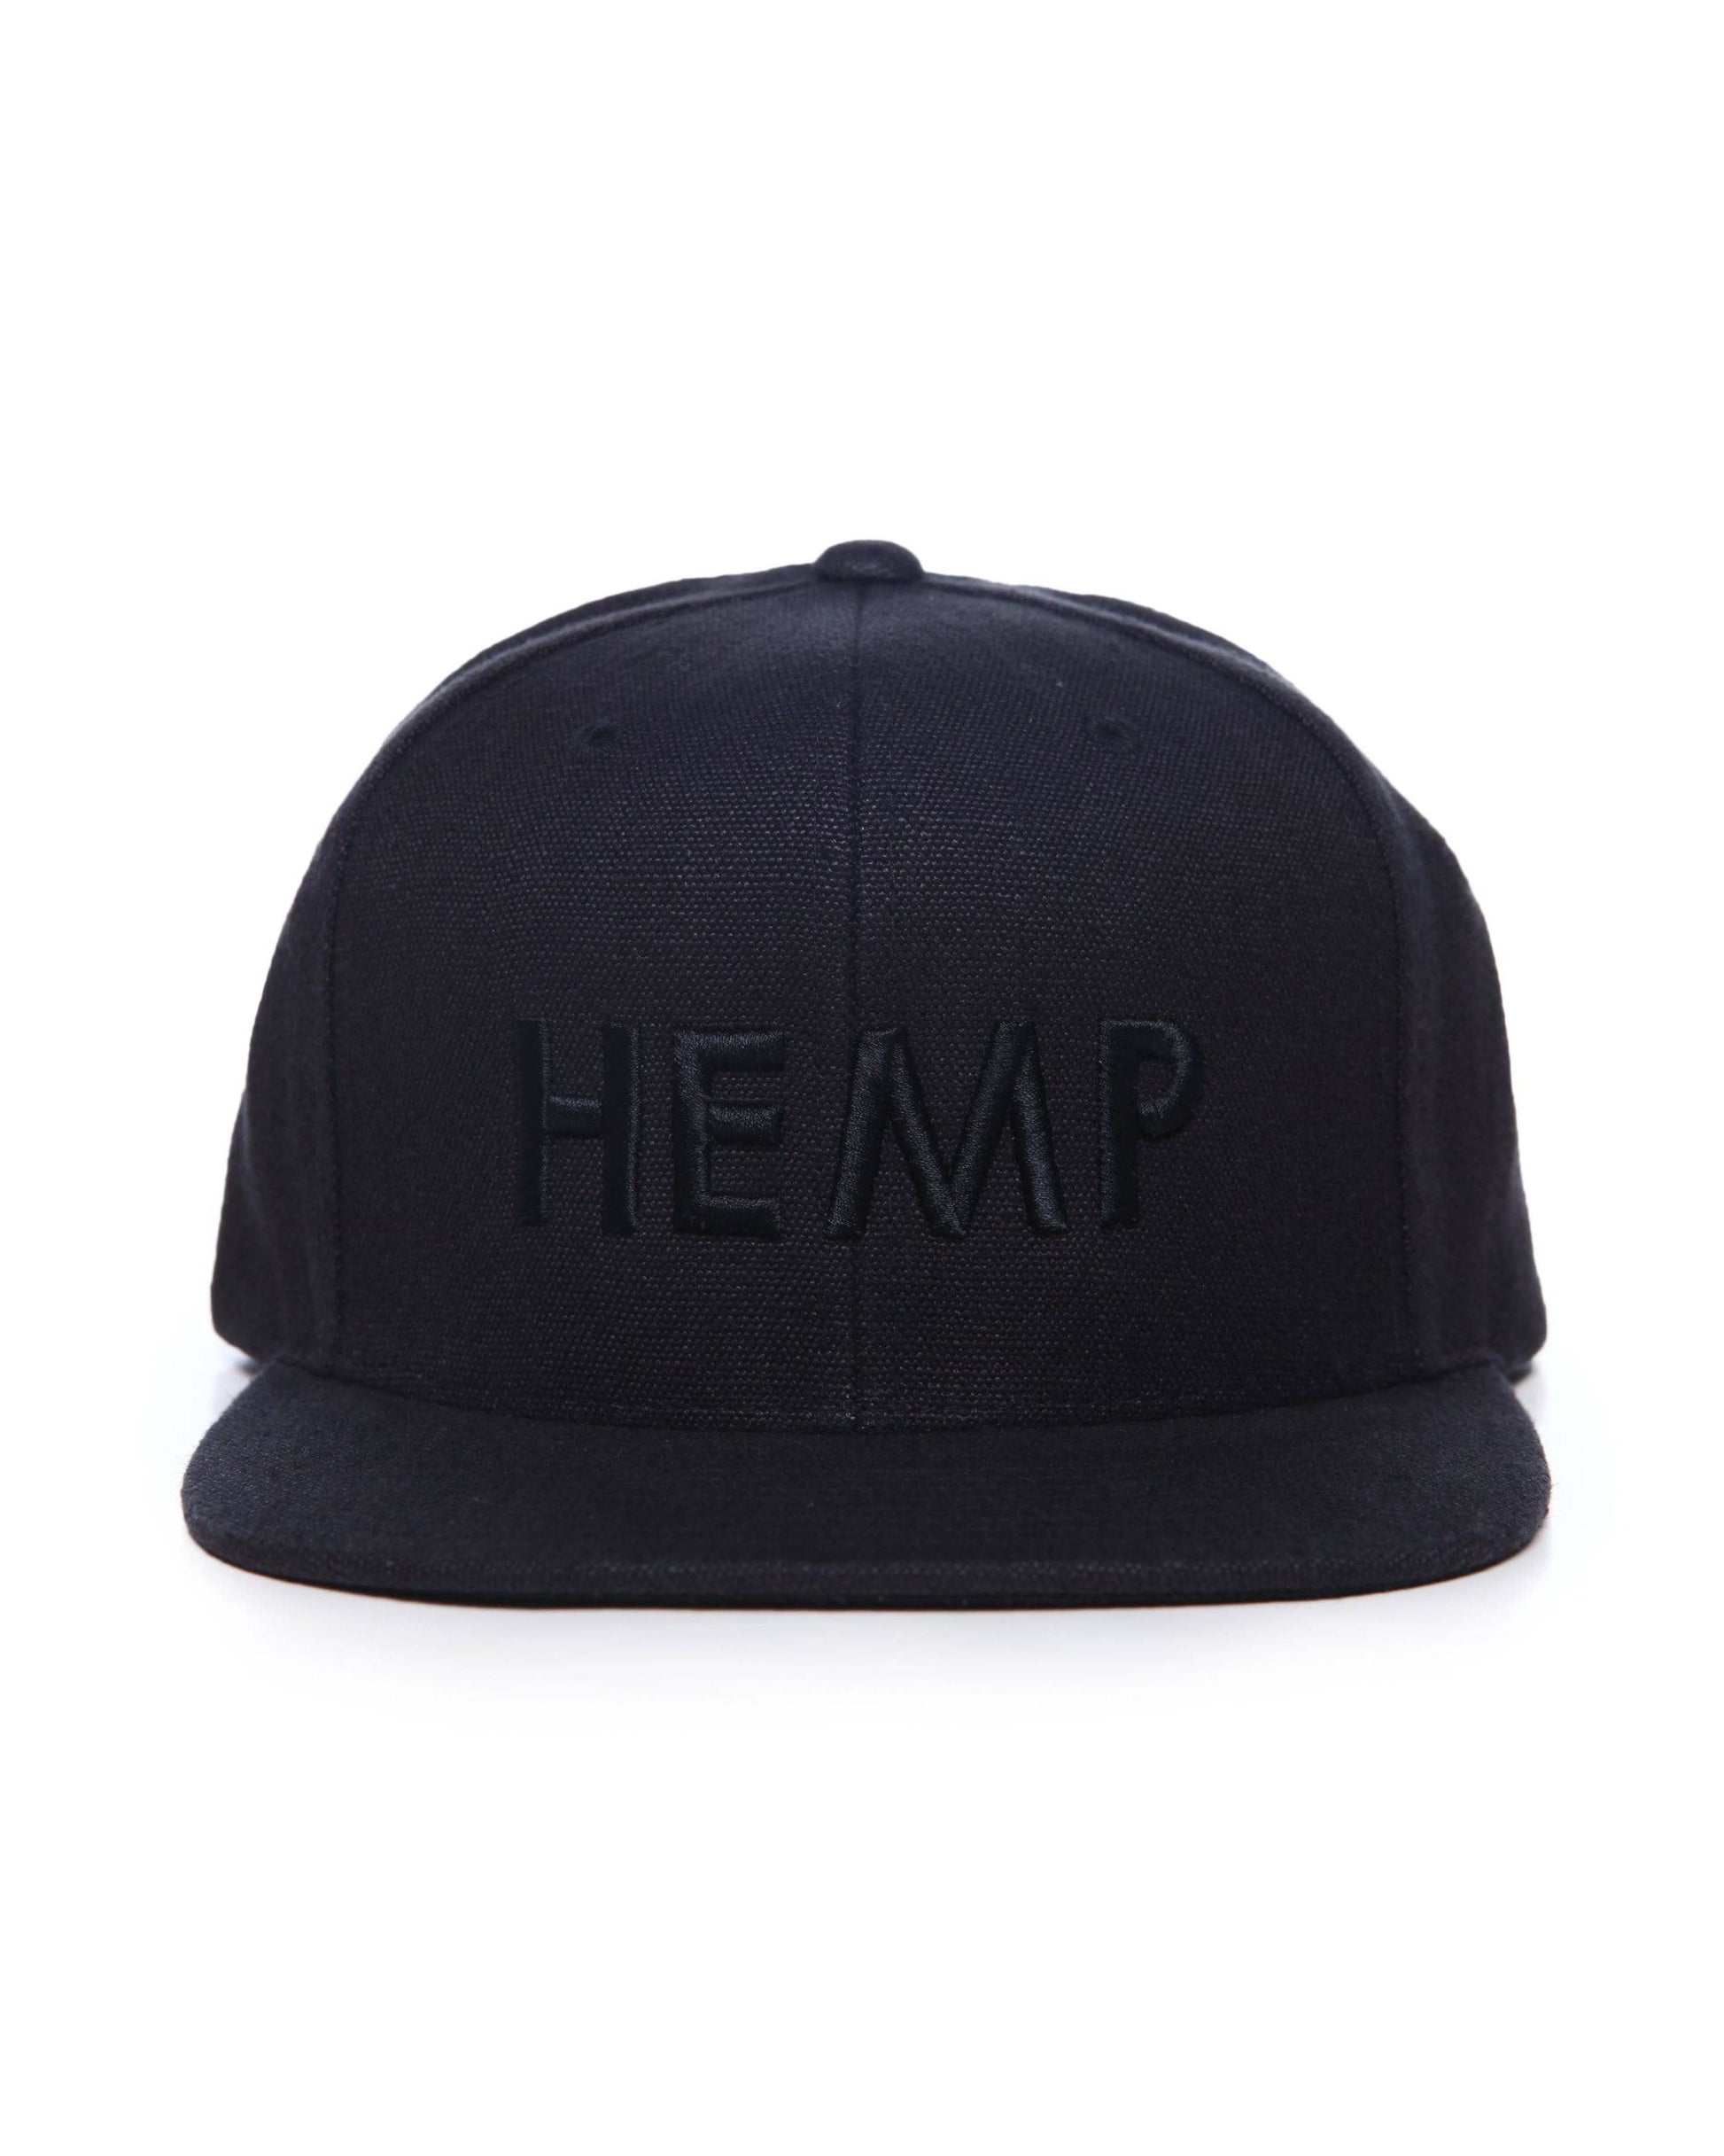 HEMPZOO HEMP BLACK KIND CAP - HEMPZOO